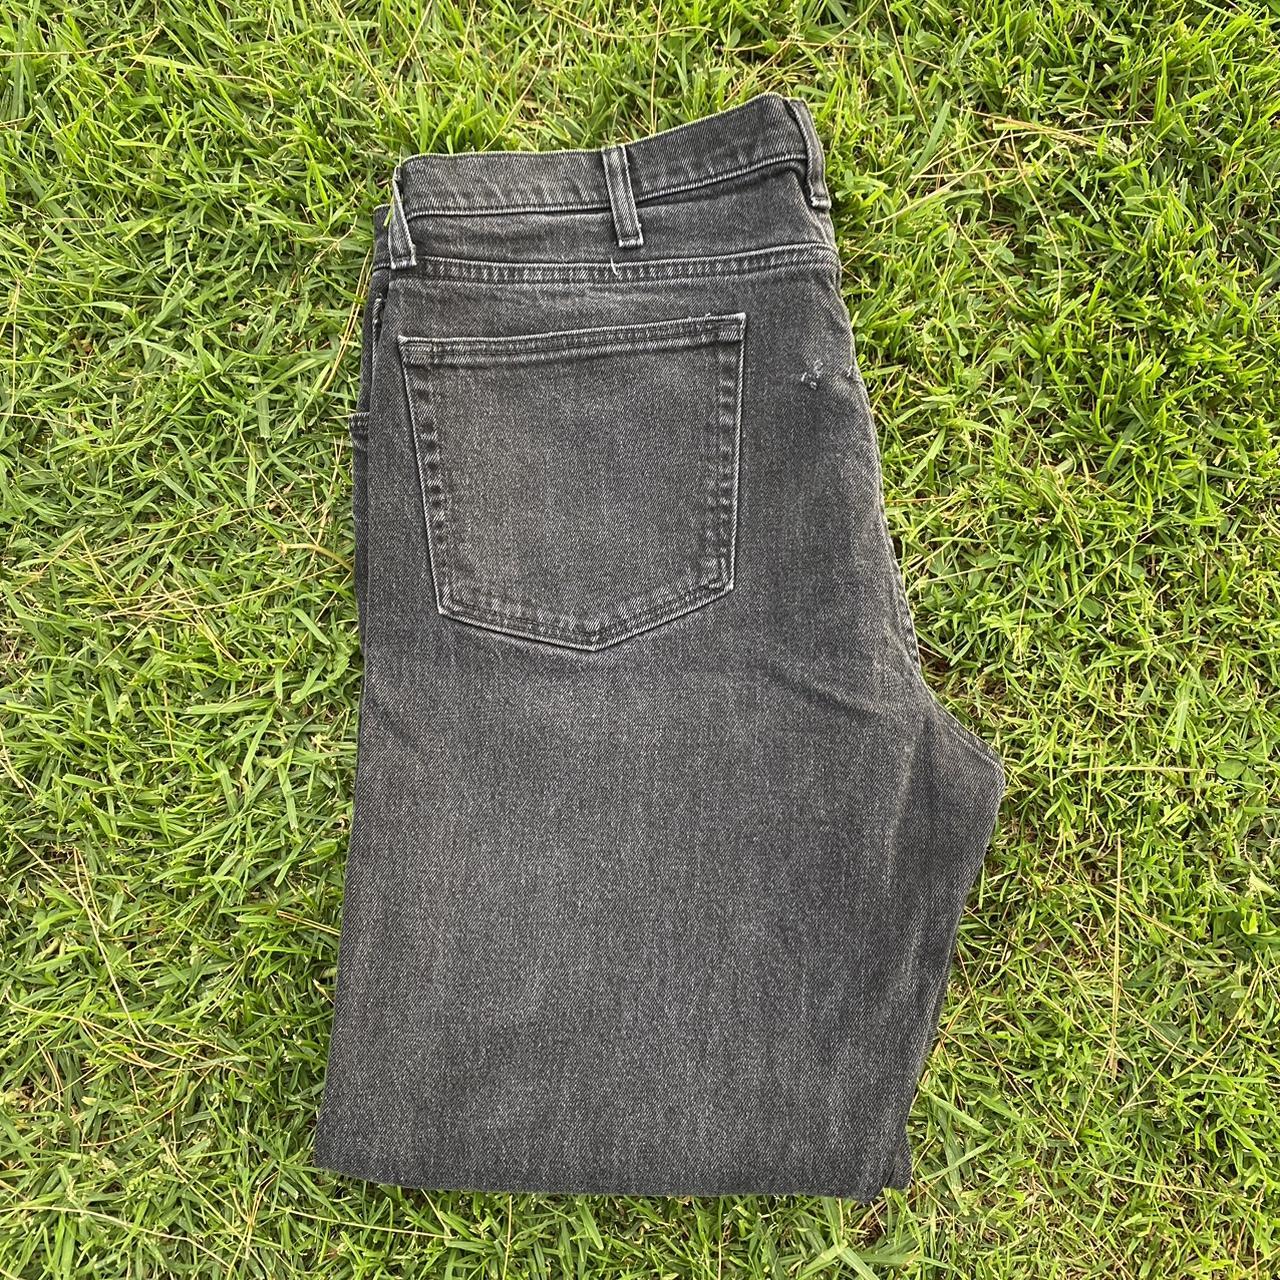 Wrangler reserve advance comfort jeans washed black... - Depop